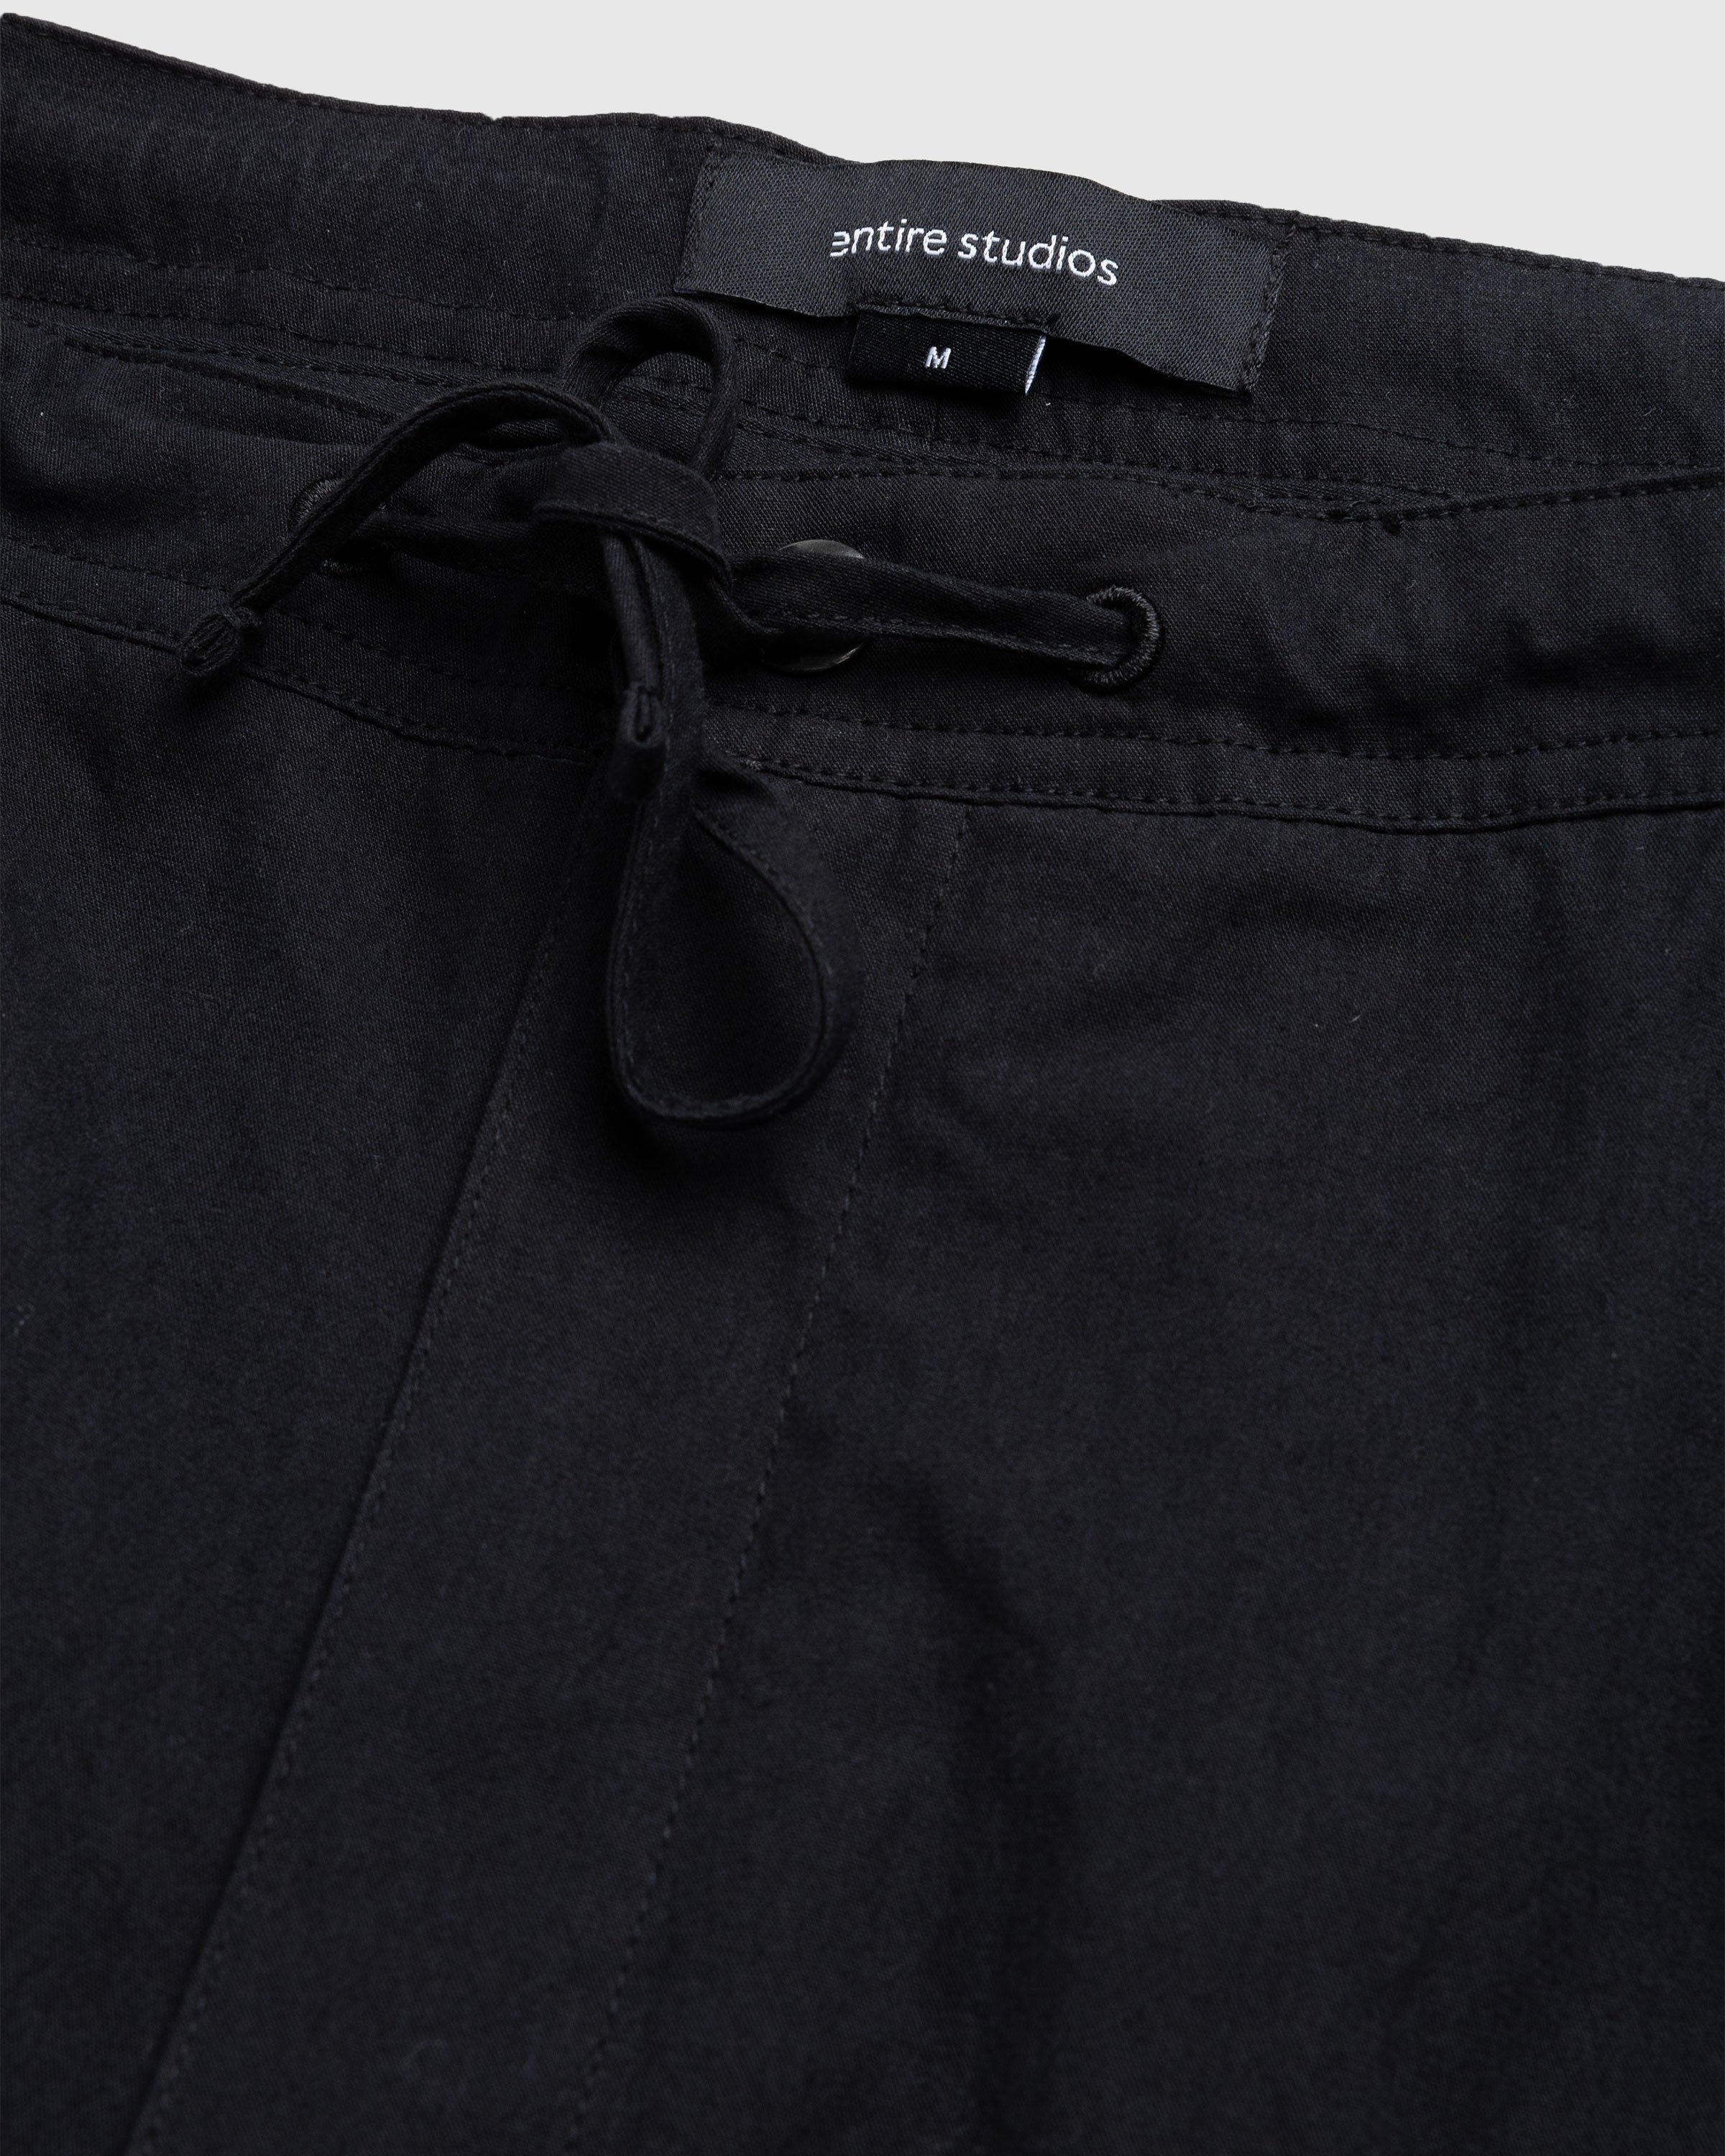 Cotton fleece cargo pants in grey - Entire Studios